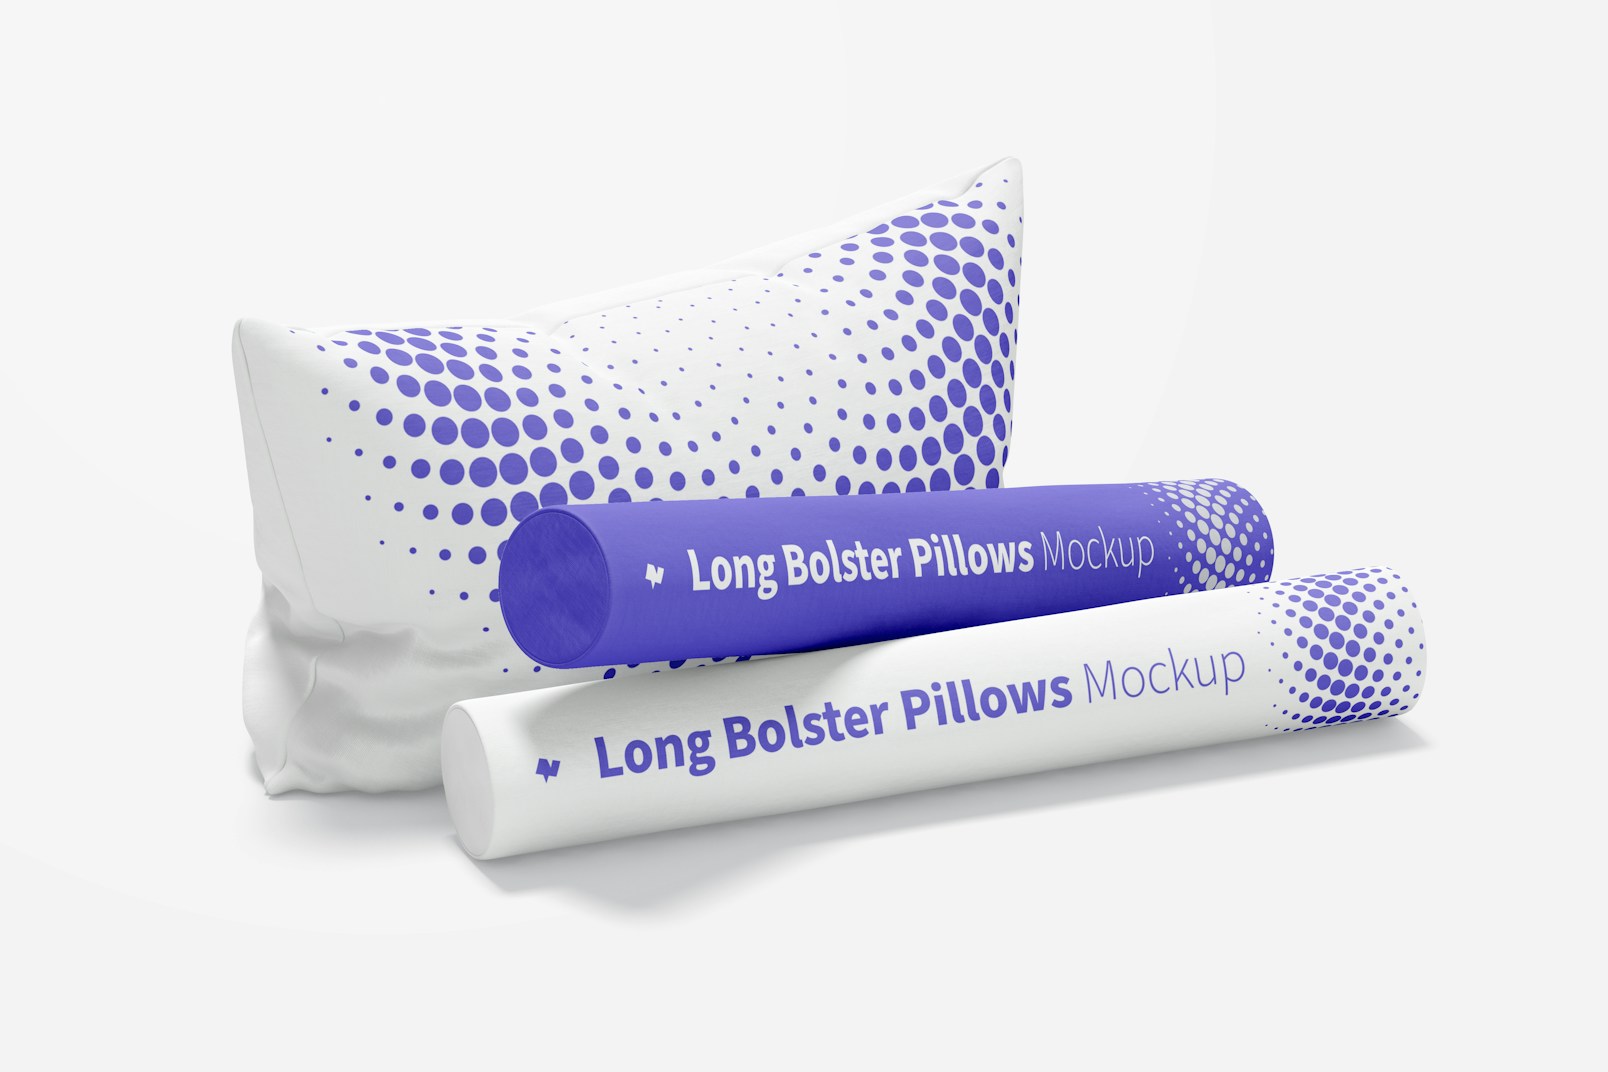 Long Bolster Pillows Mockup, Perspective